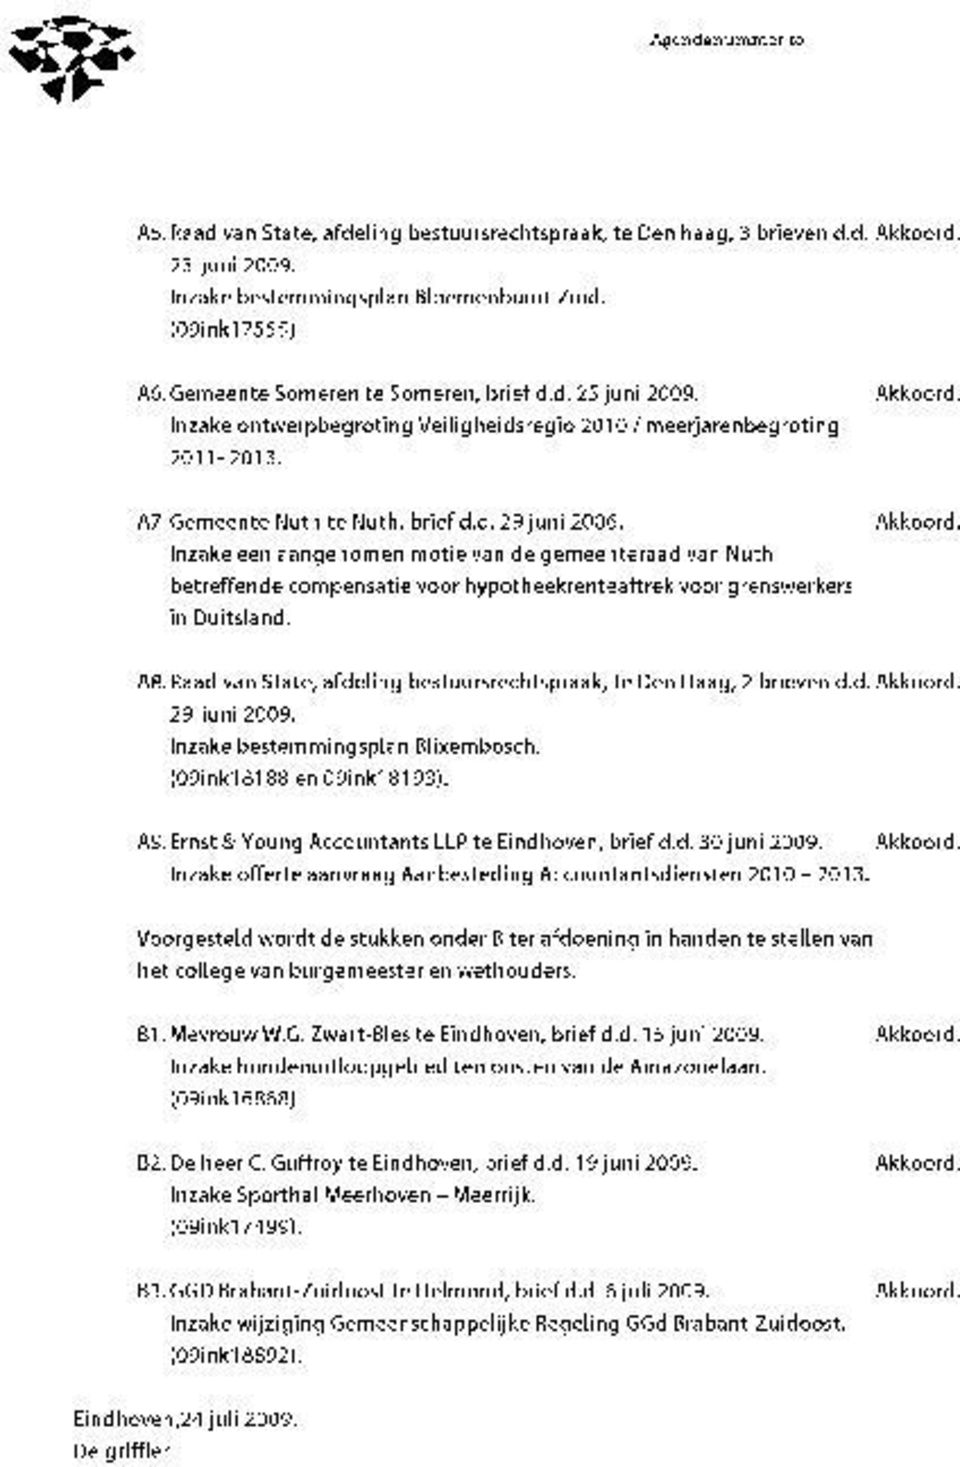 Inzake ontwerpbegroting Veiligheidsregio 2010/ meerjarenbegroting 2011-2013. A7.Gemeente Nuth te Nuth, brief d.d. 29 juni 2006. Akkoord.